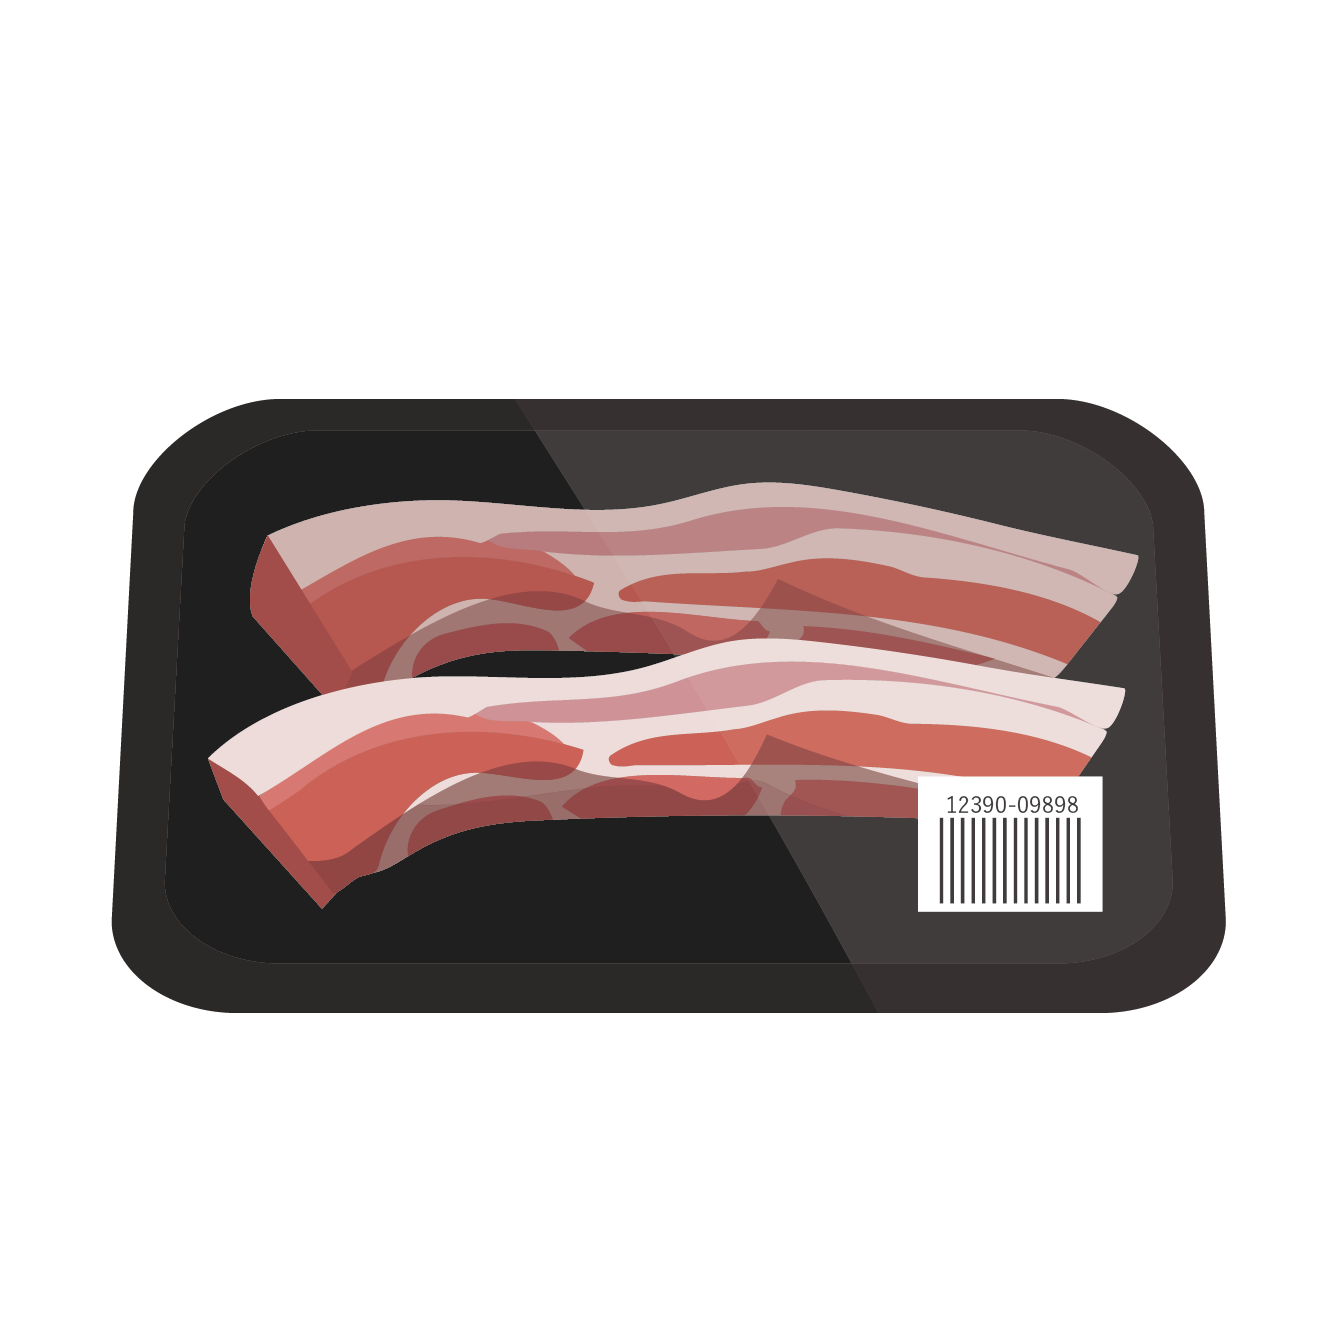 豚肉 パック入り 豚バラブロックのイラスト お肉 商用フリー 無料 のイラスト素材なら イラストマンション